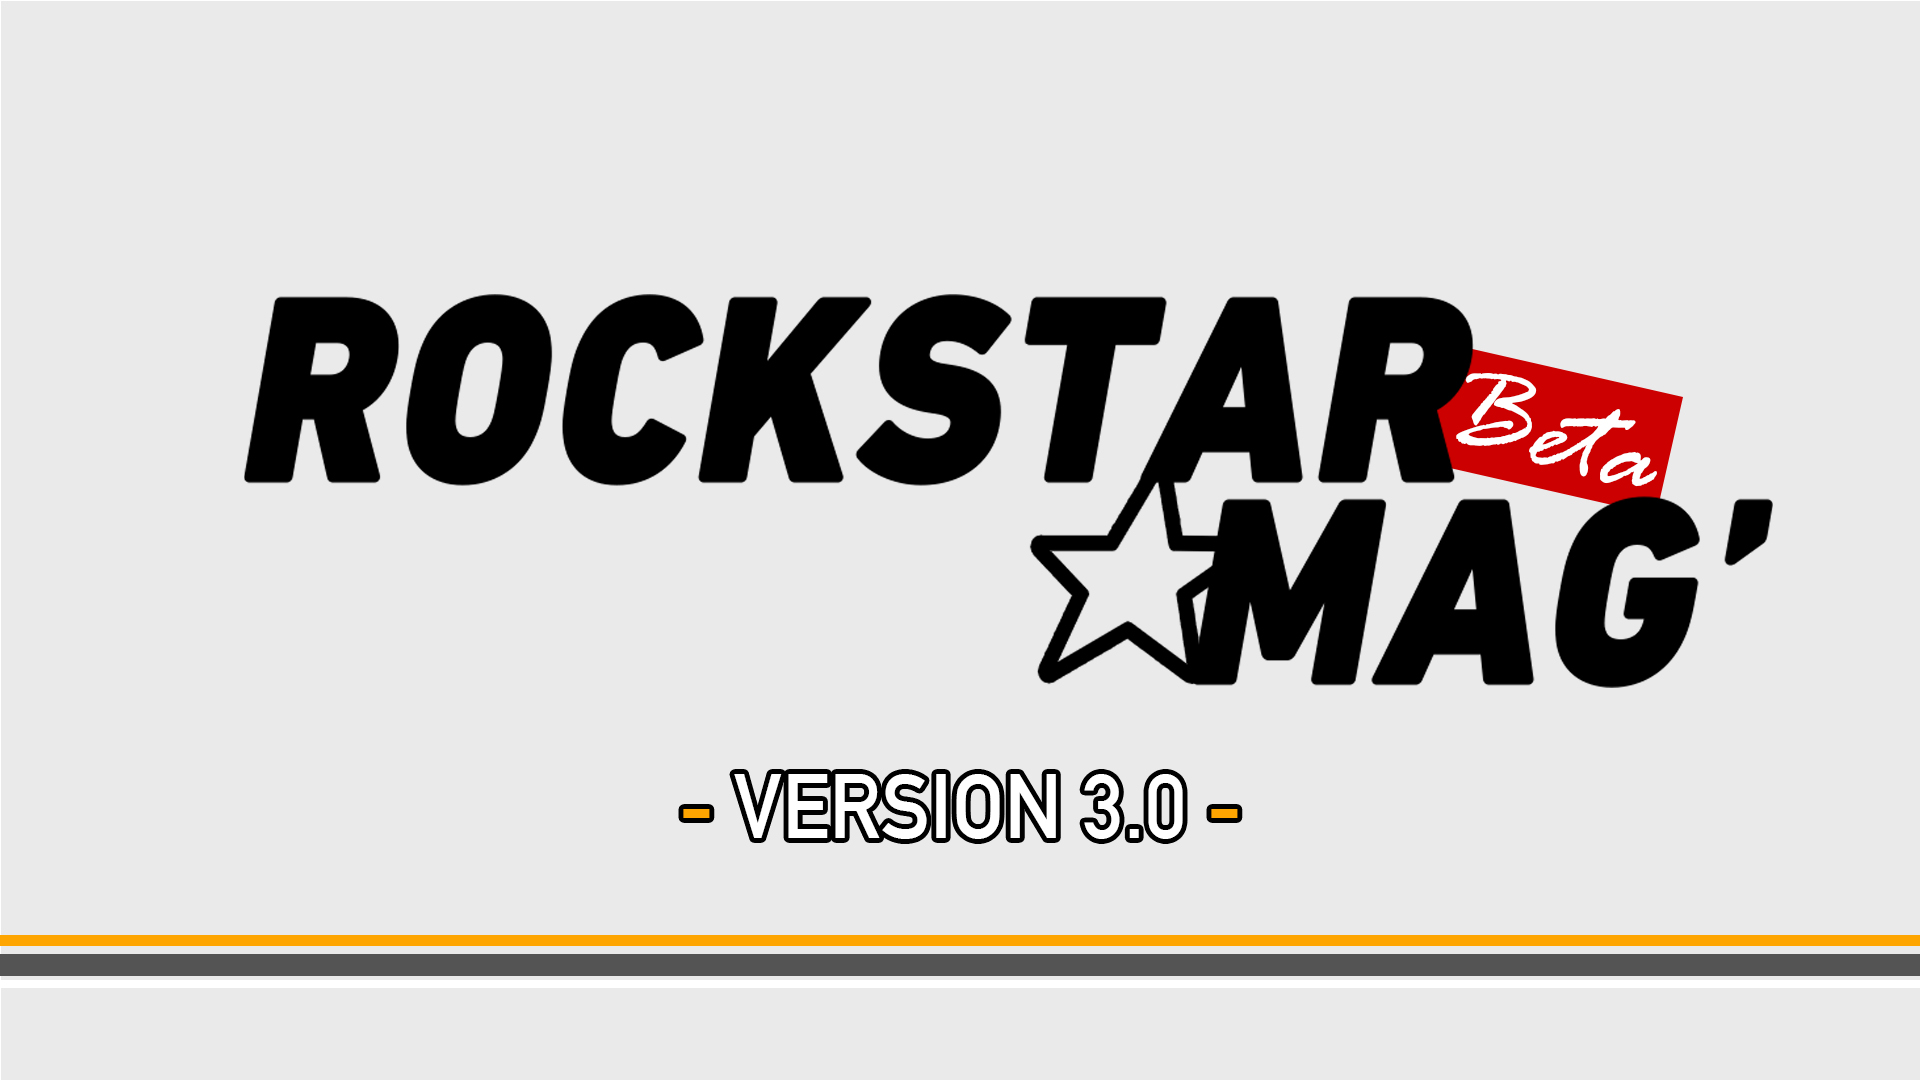 Rockstar Mag' V3 Beta